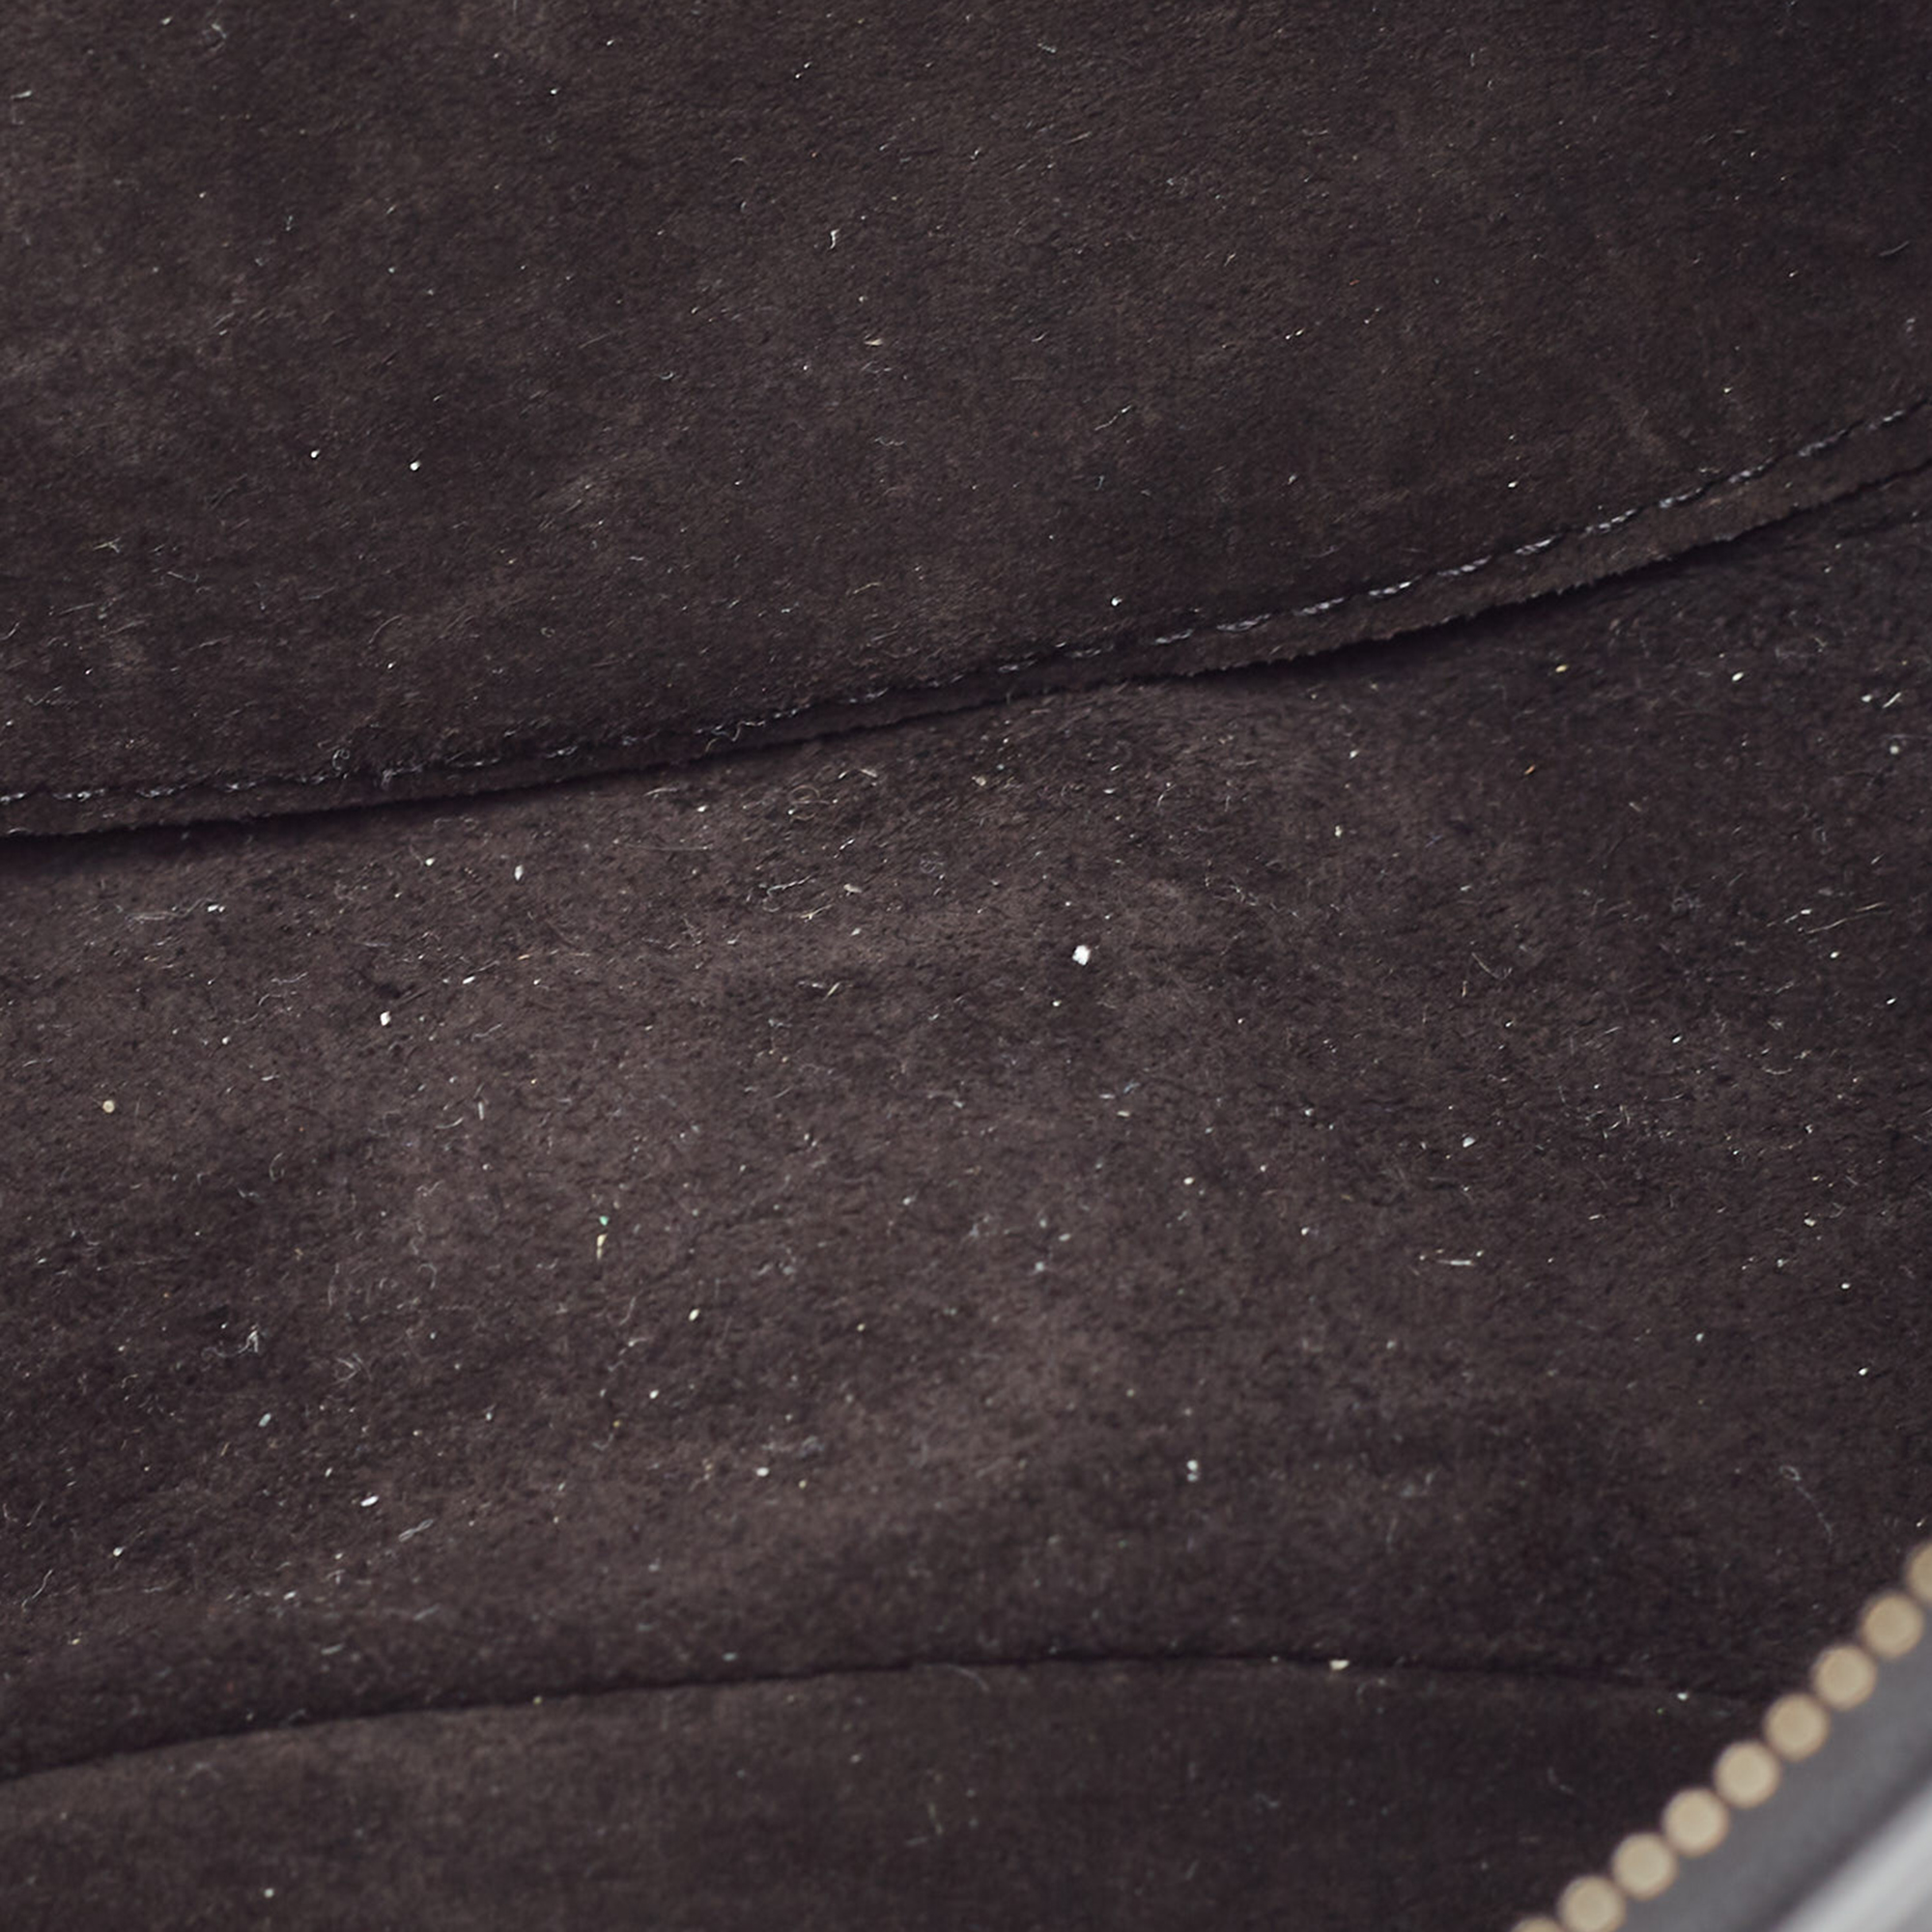 Celine Black Leather Ava Chain Shoulder Bag